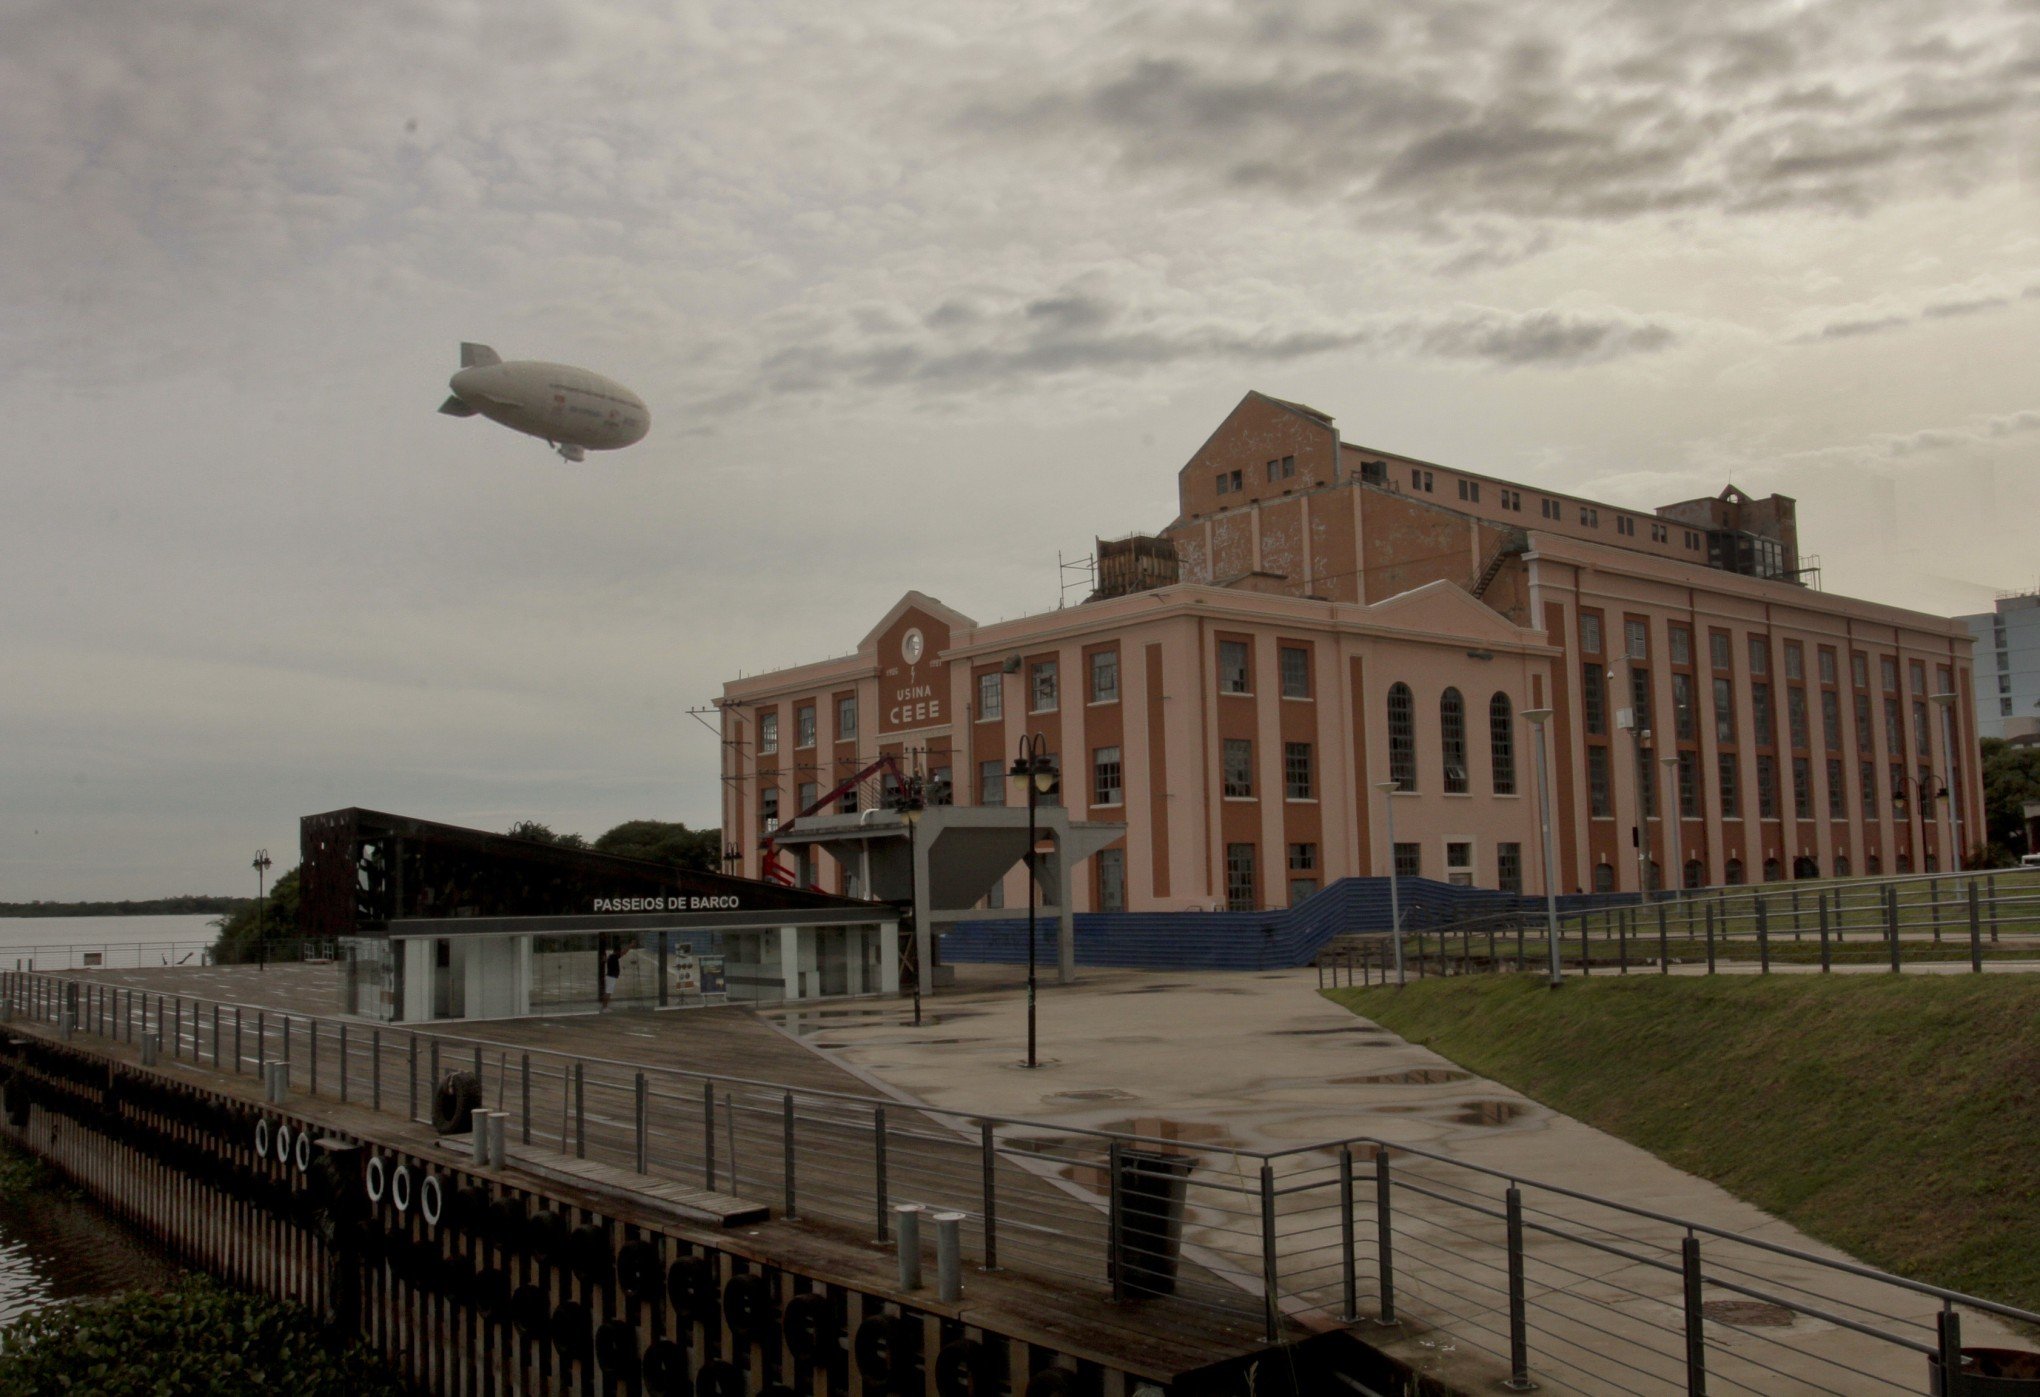 Presença de dirigível em Porto Alegre lembra passagem de Zeppelin pelo céu gaúcho há quase 90 anos